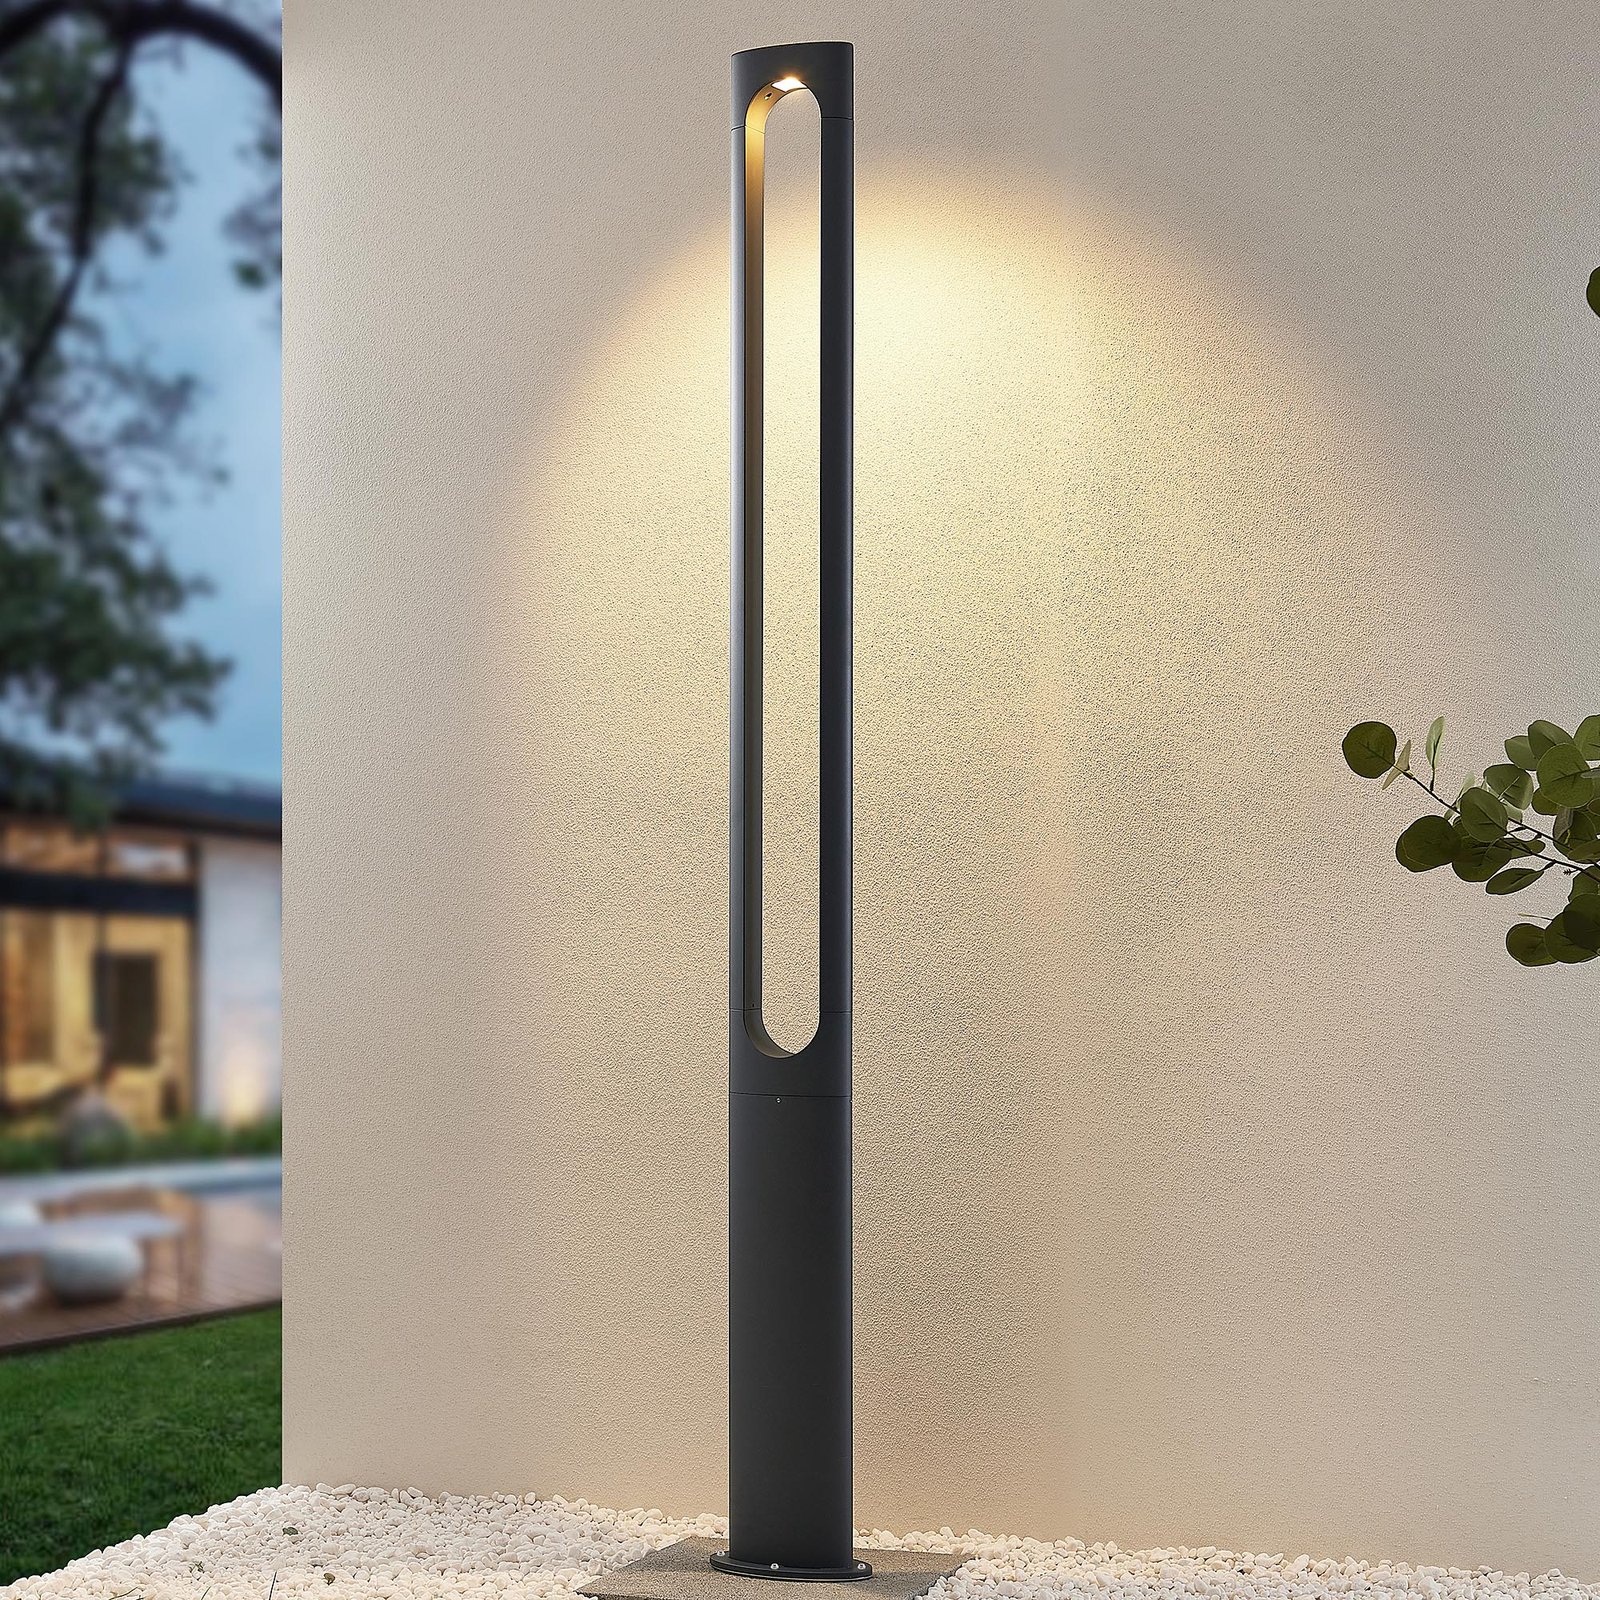 Lucande Dovino LED-lyktstolpe, 200 cm